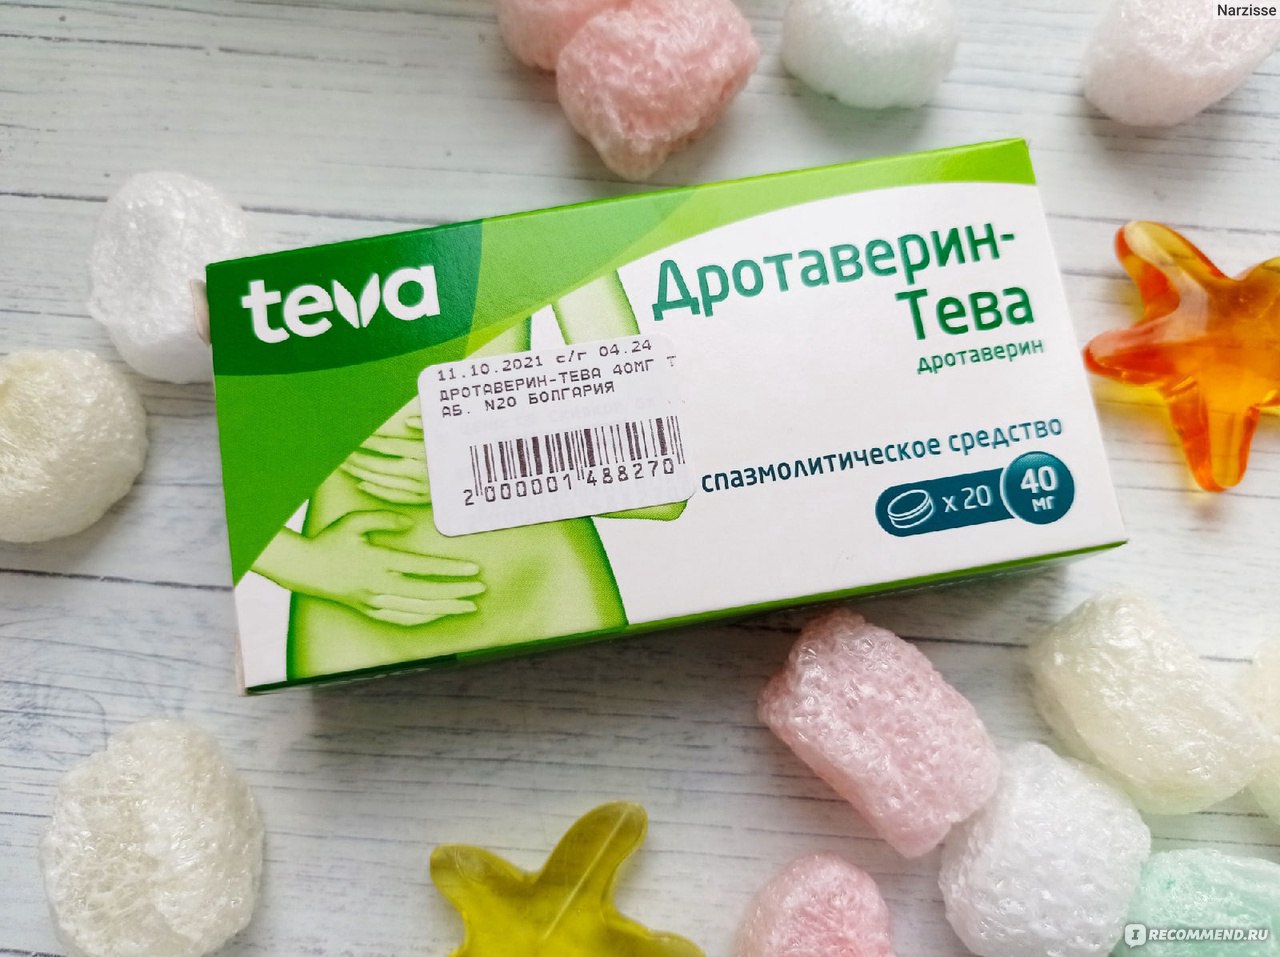 Таблетки TeVa Дротаверин - Тева - «Я попросила в аптеке аналог Ношпы .